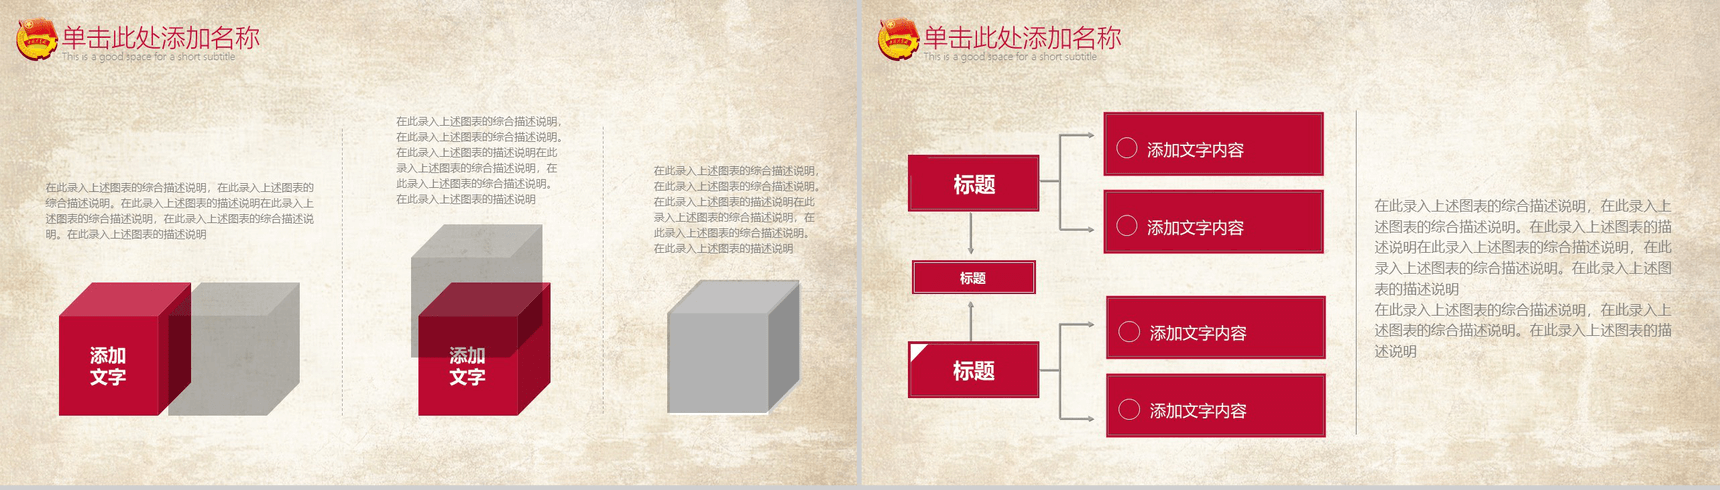 中国共青团一学一做精神教学党政PPT模板-9